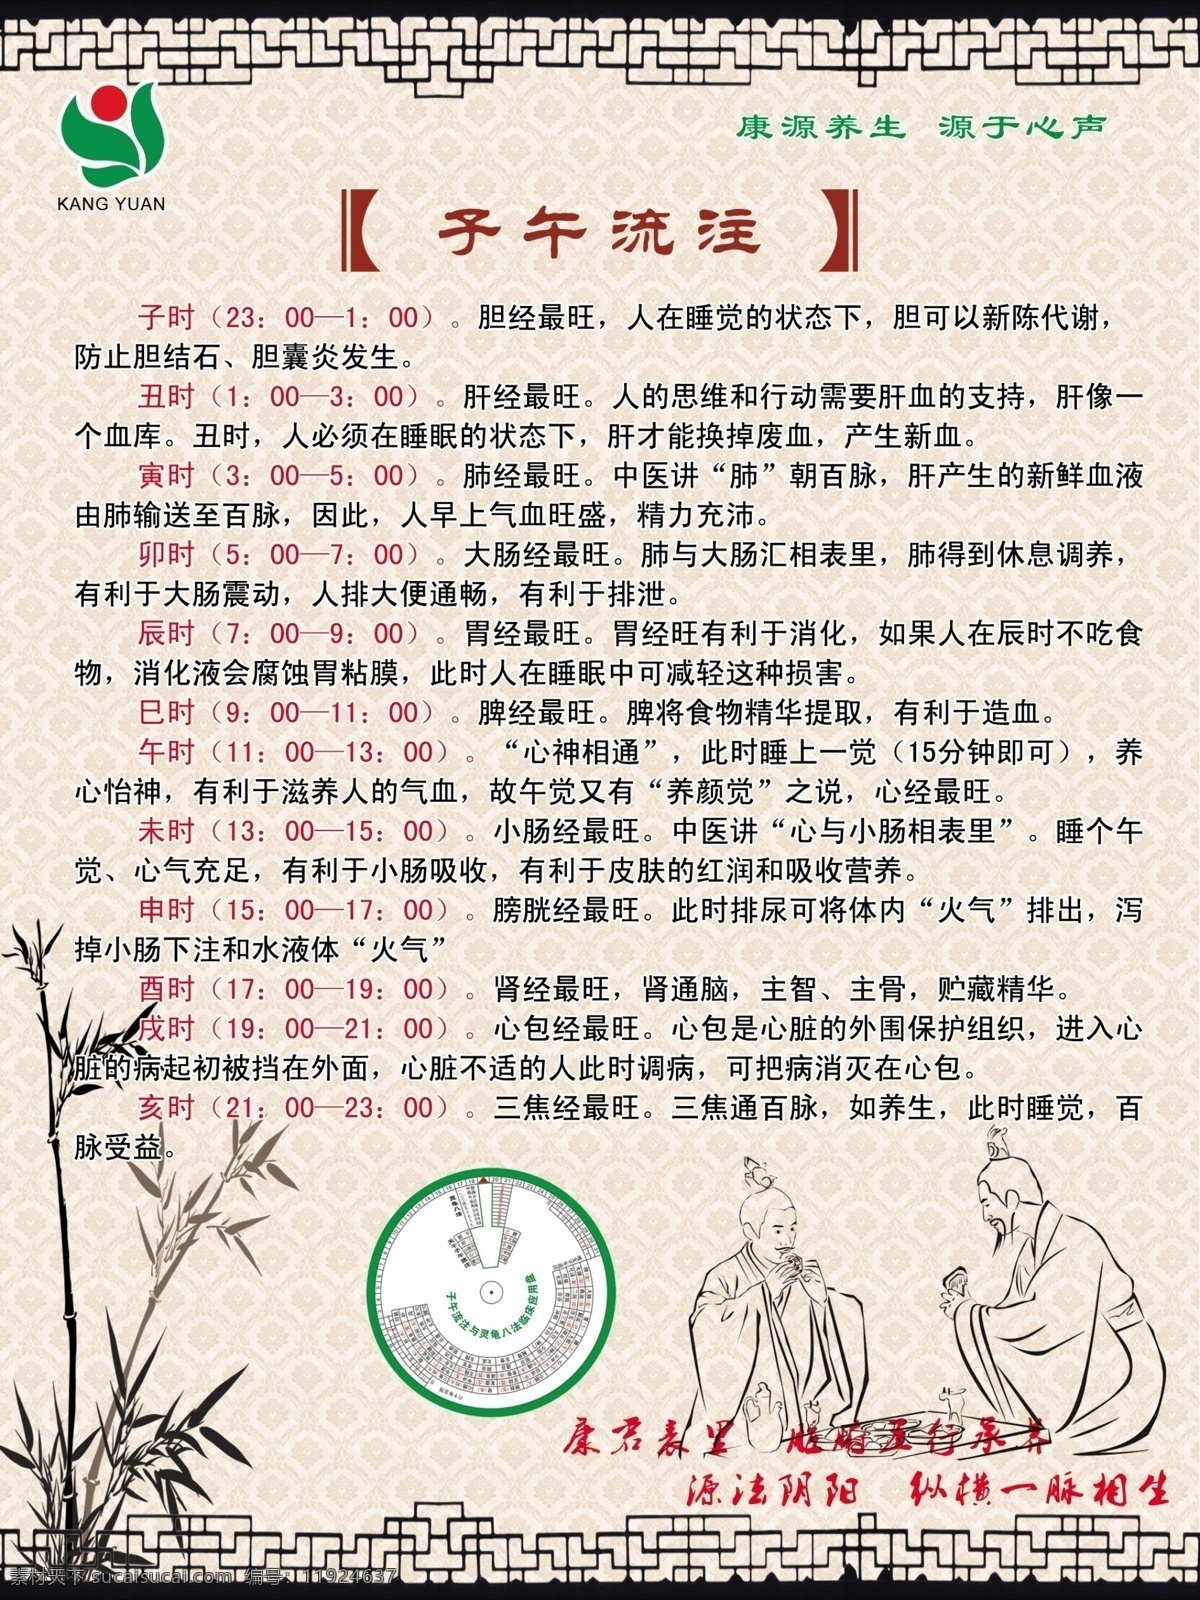 子午流注 中国风 水墨 古典 中式风格 边框 竹子 古代插画 古代人物 饮食 养生 展板模板 广告设计模板 源文件